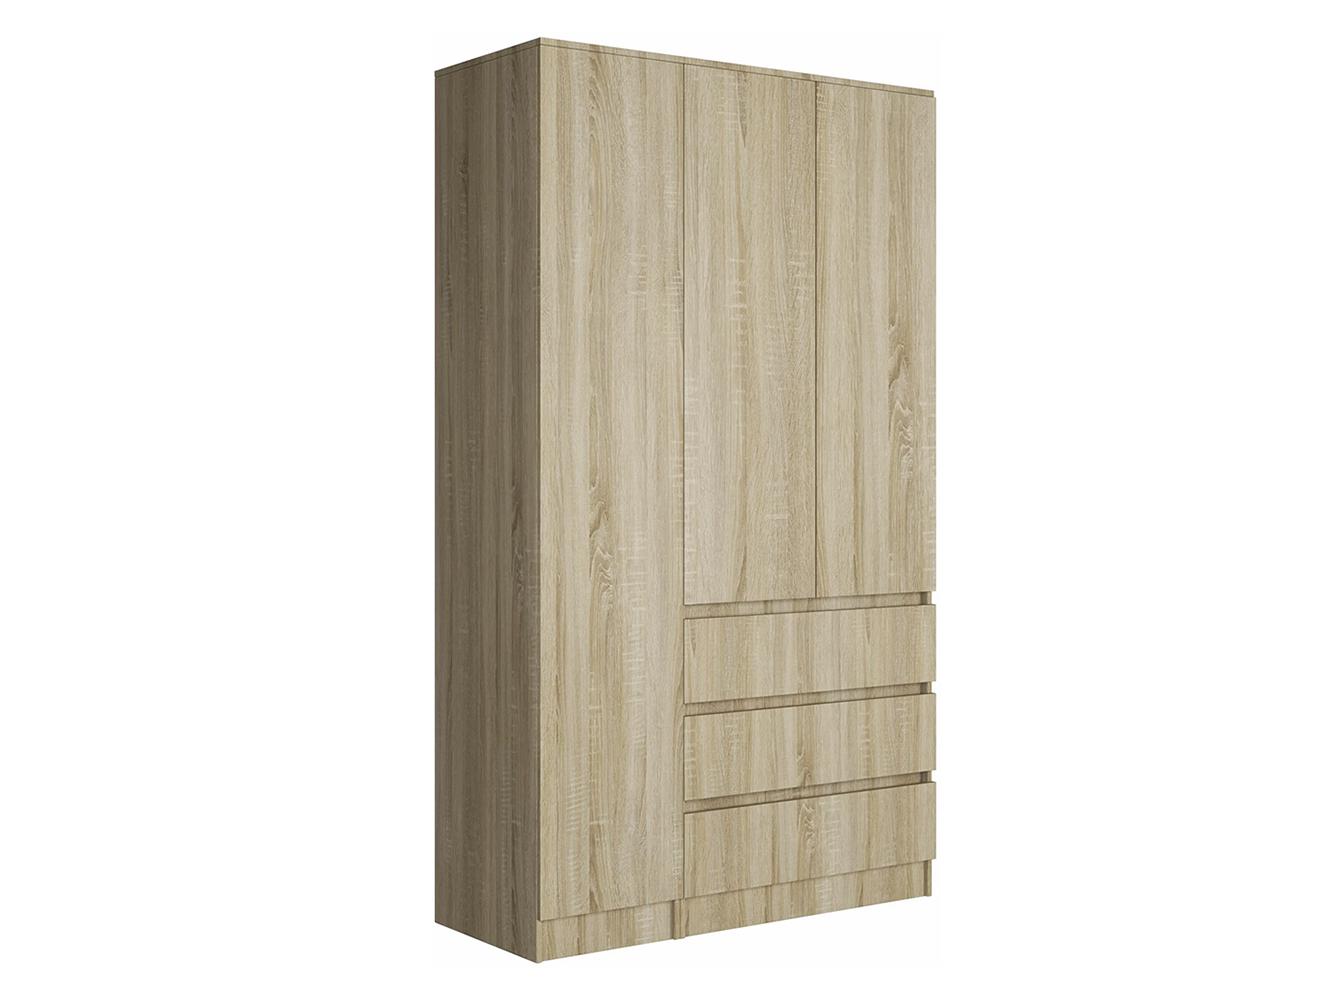 Распашной шкаф Мальм 314 oak ИКЕА (IKEA) изображение товара